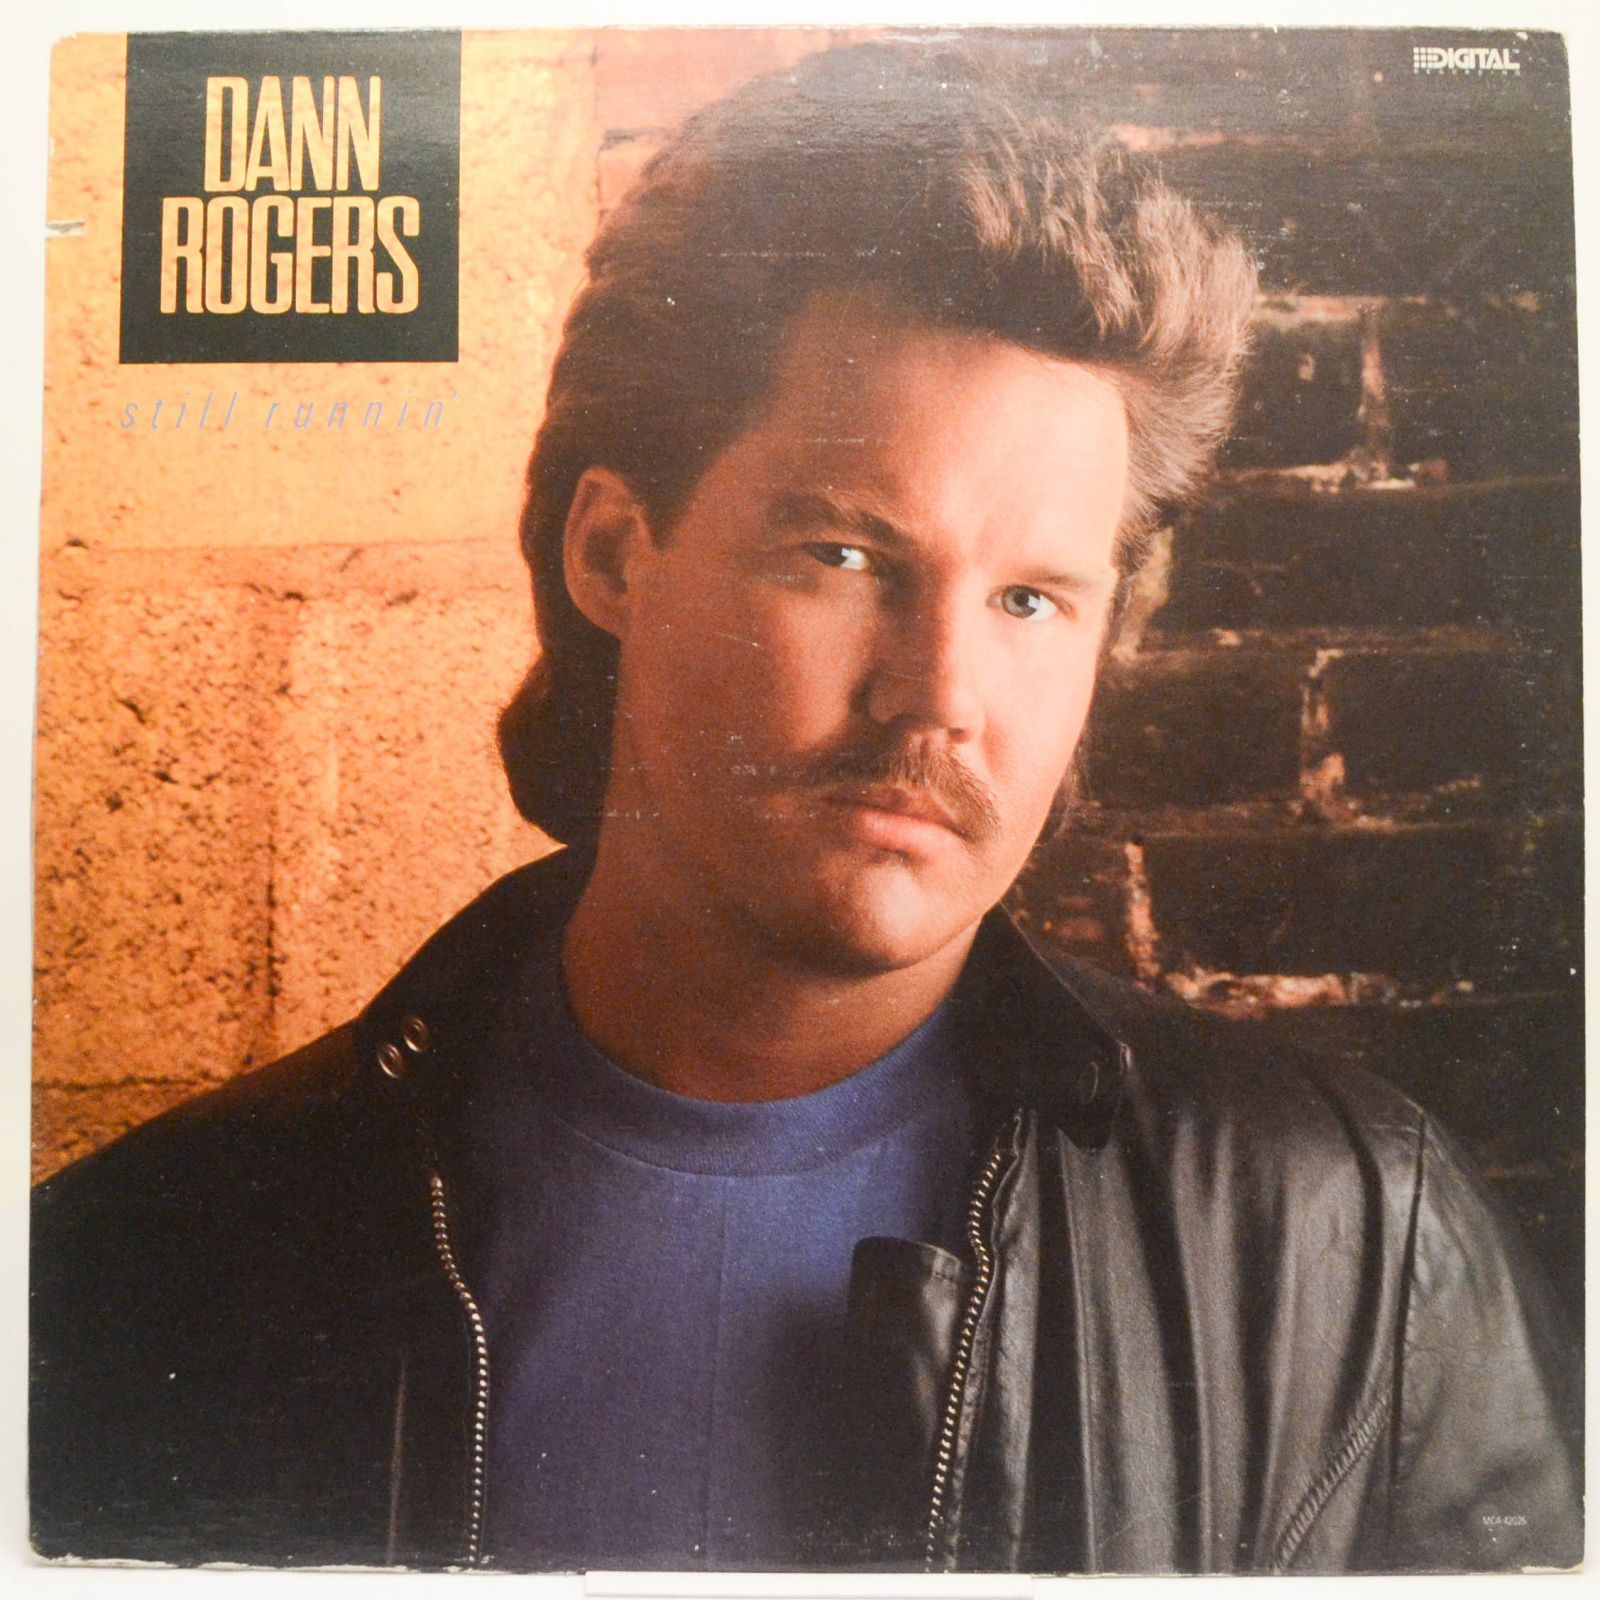 Dann Rogers — Still Runnin', 1987